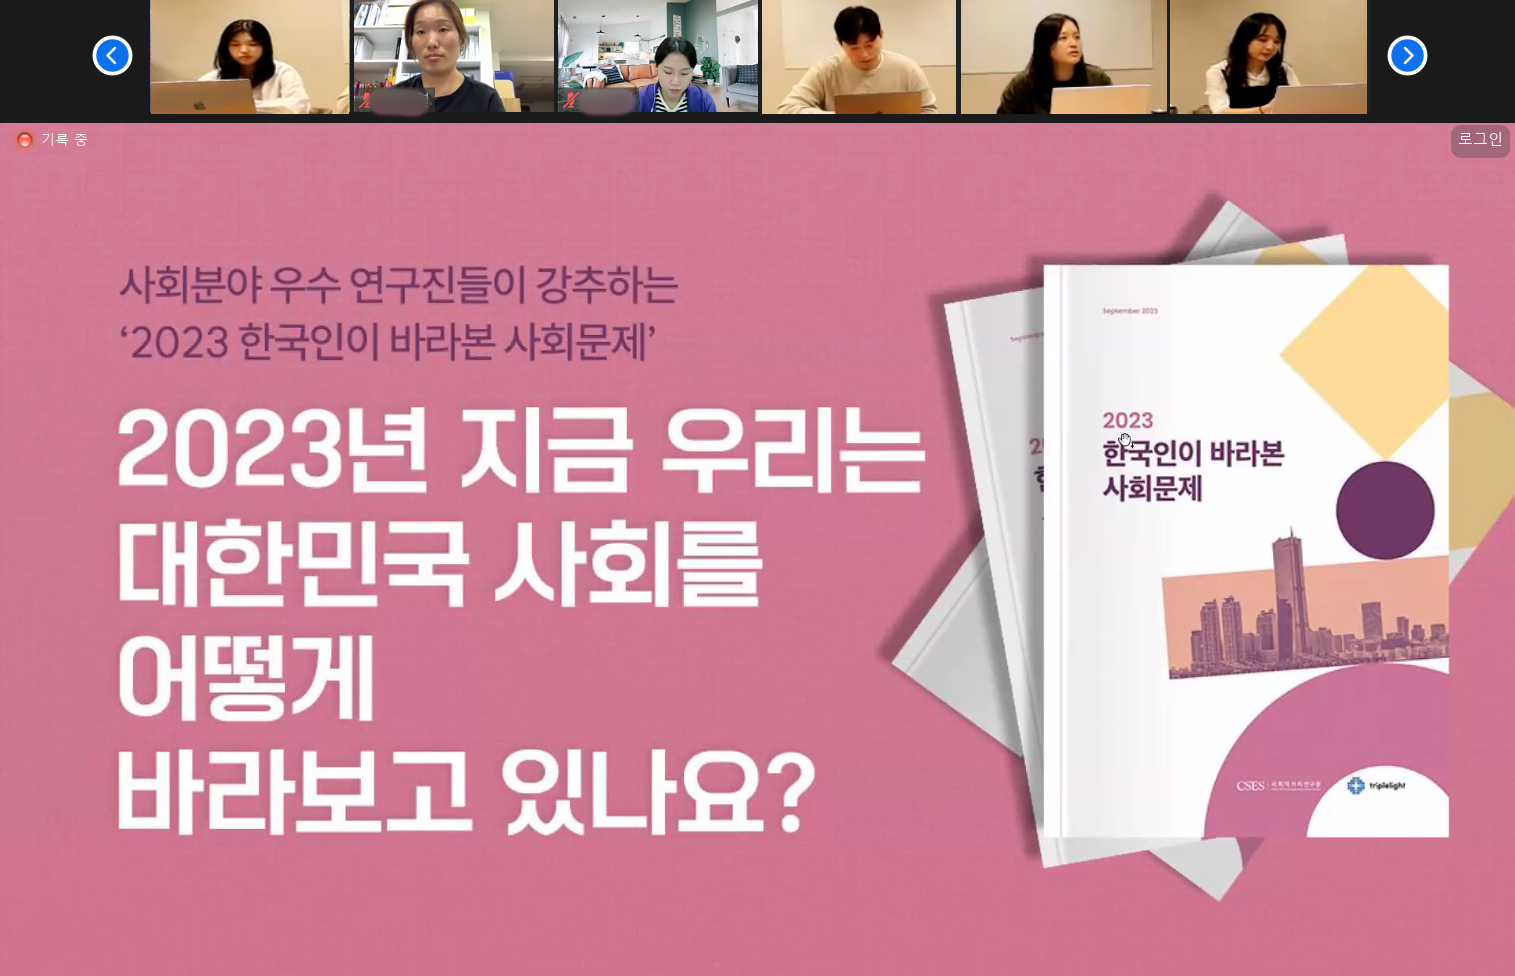   사회분야 우수 연구진들이 강추하는 2023 한국인이 바라본 사회문제 2023년 지금 우리는 대한민국 사회를 어떻게 바라보고 있나요? 온라인 포럼 진행 모습입니다